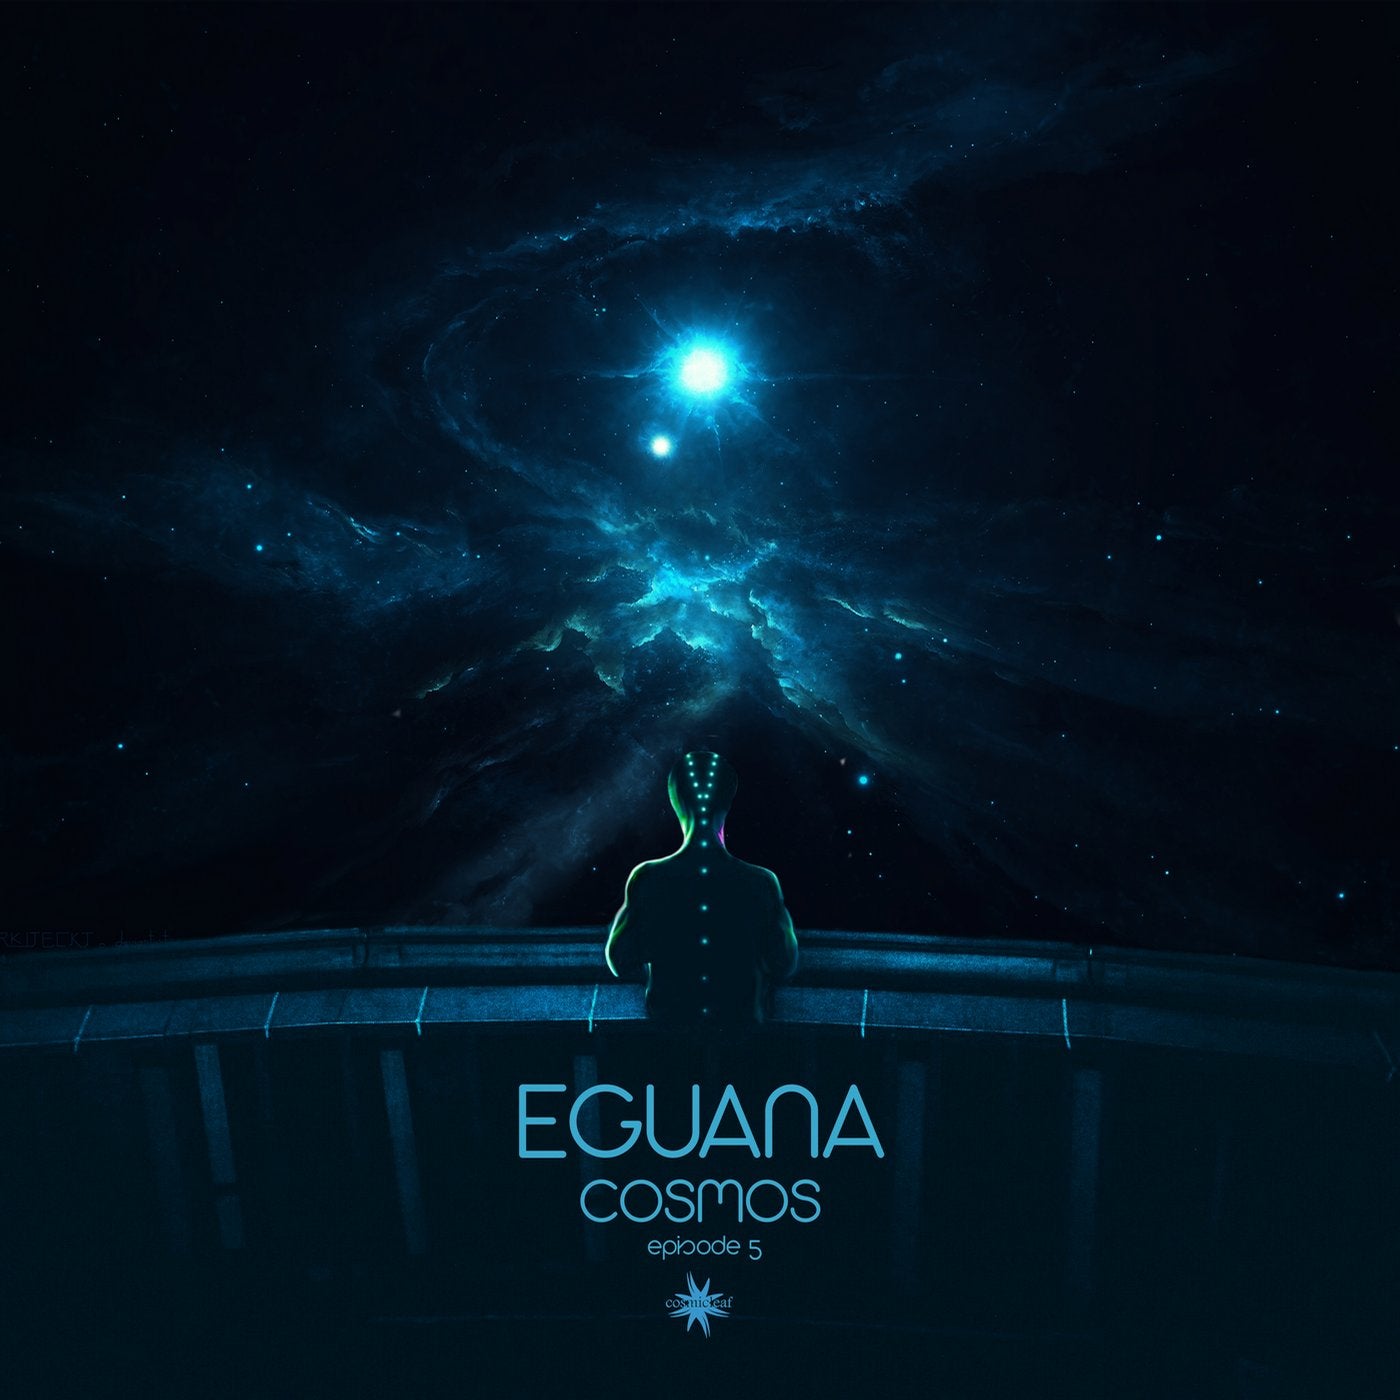 Скриптонит космос mp3. Eguana. Cosmos фото для обложка музыка. Eguana музыкант. Iguana Cosmos Episode 4.